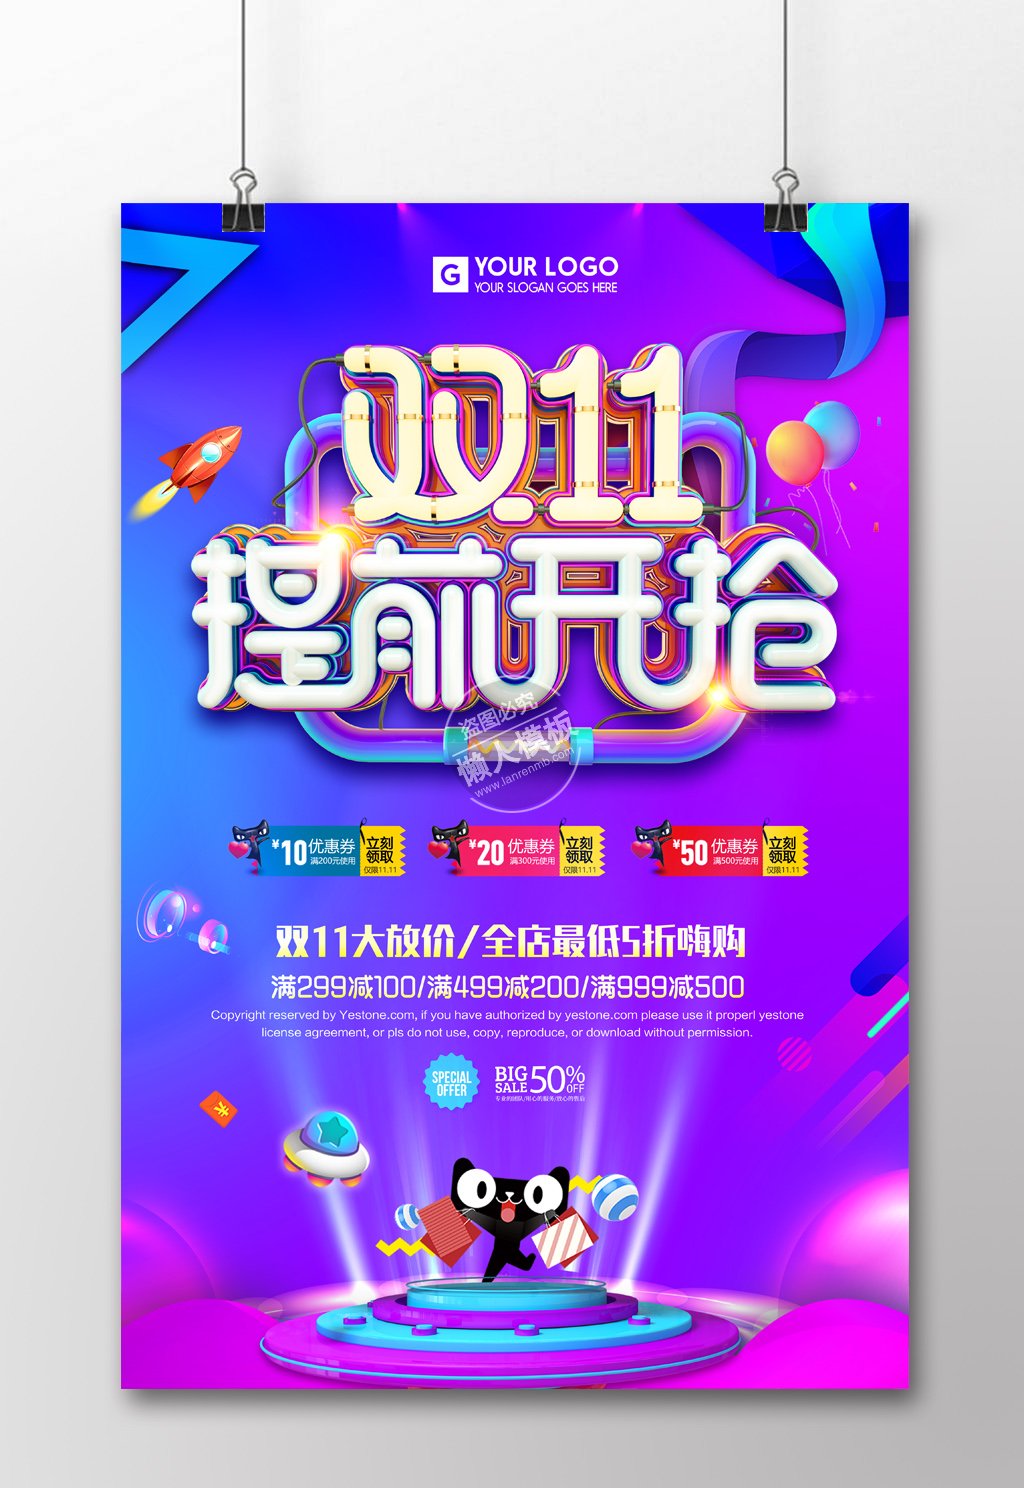 炫彩双11提前开抢海报ui界面设计移动端手机网页psd素材下载